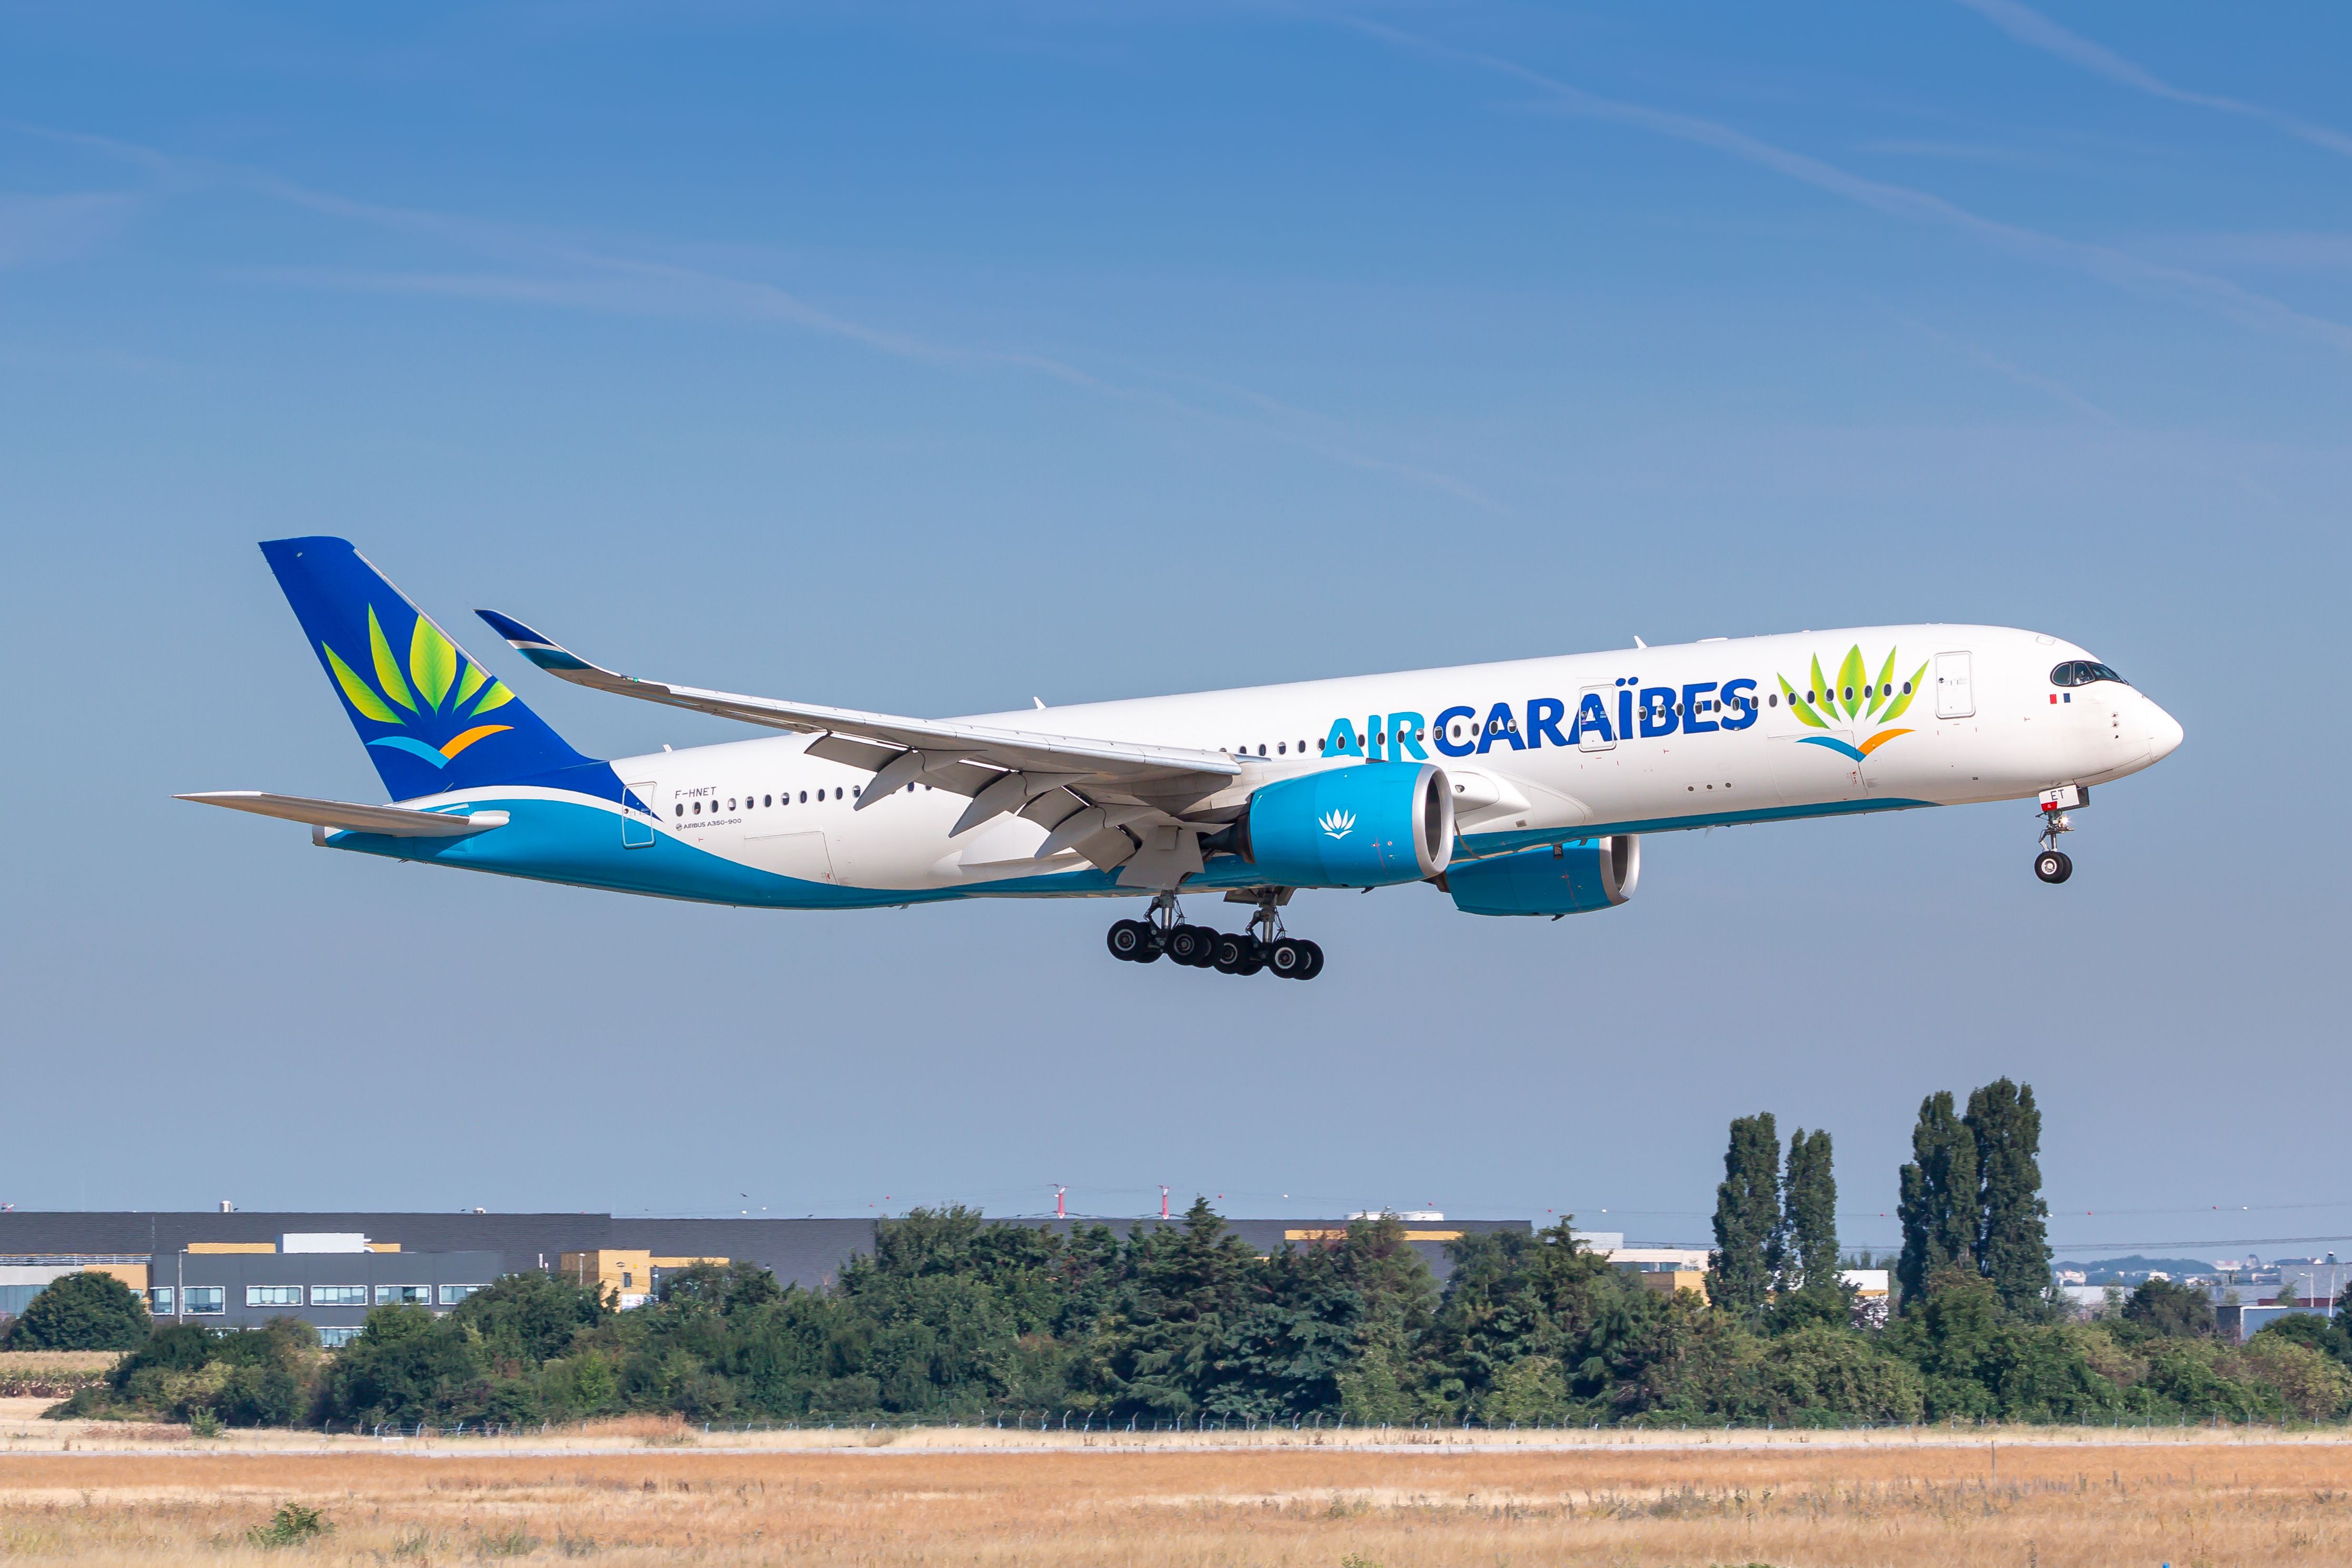 Air Caraïbes Airbus A350 landing